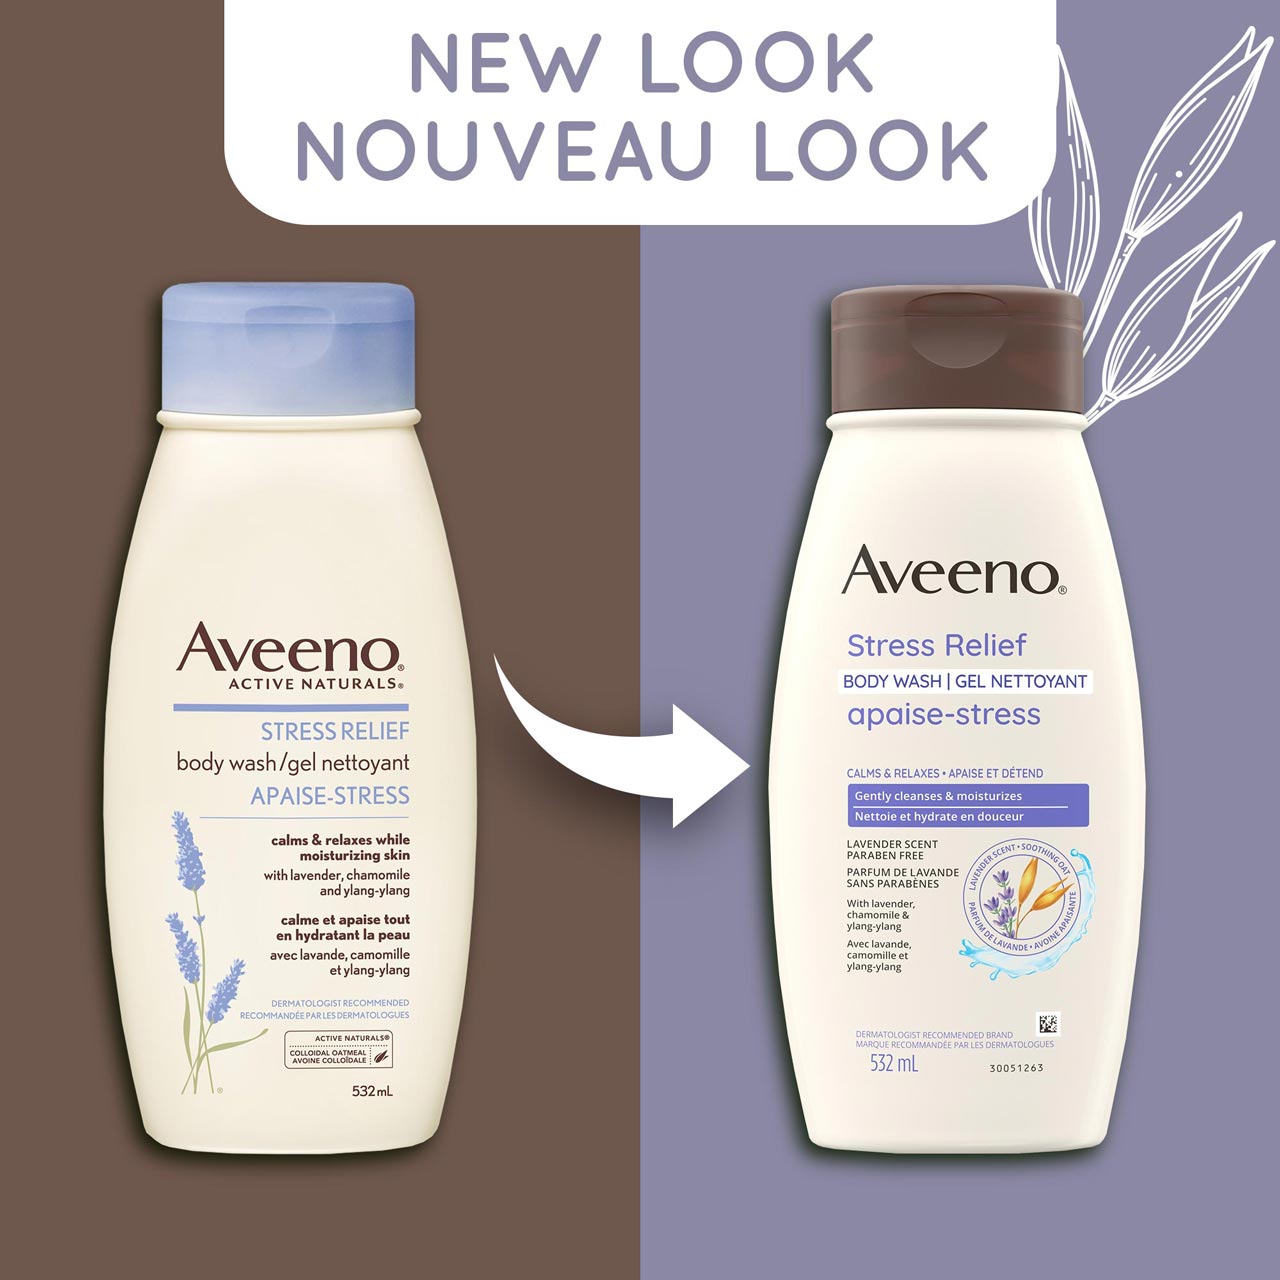 Un ancien et un nouveau flacon à presser de 532 ml du gel nettoyant apaise-stress Aveeno avec la mention « Nouveau look »